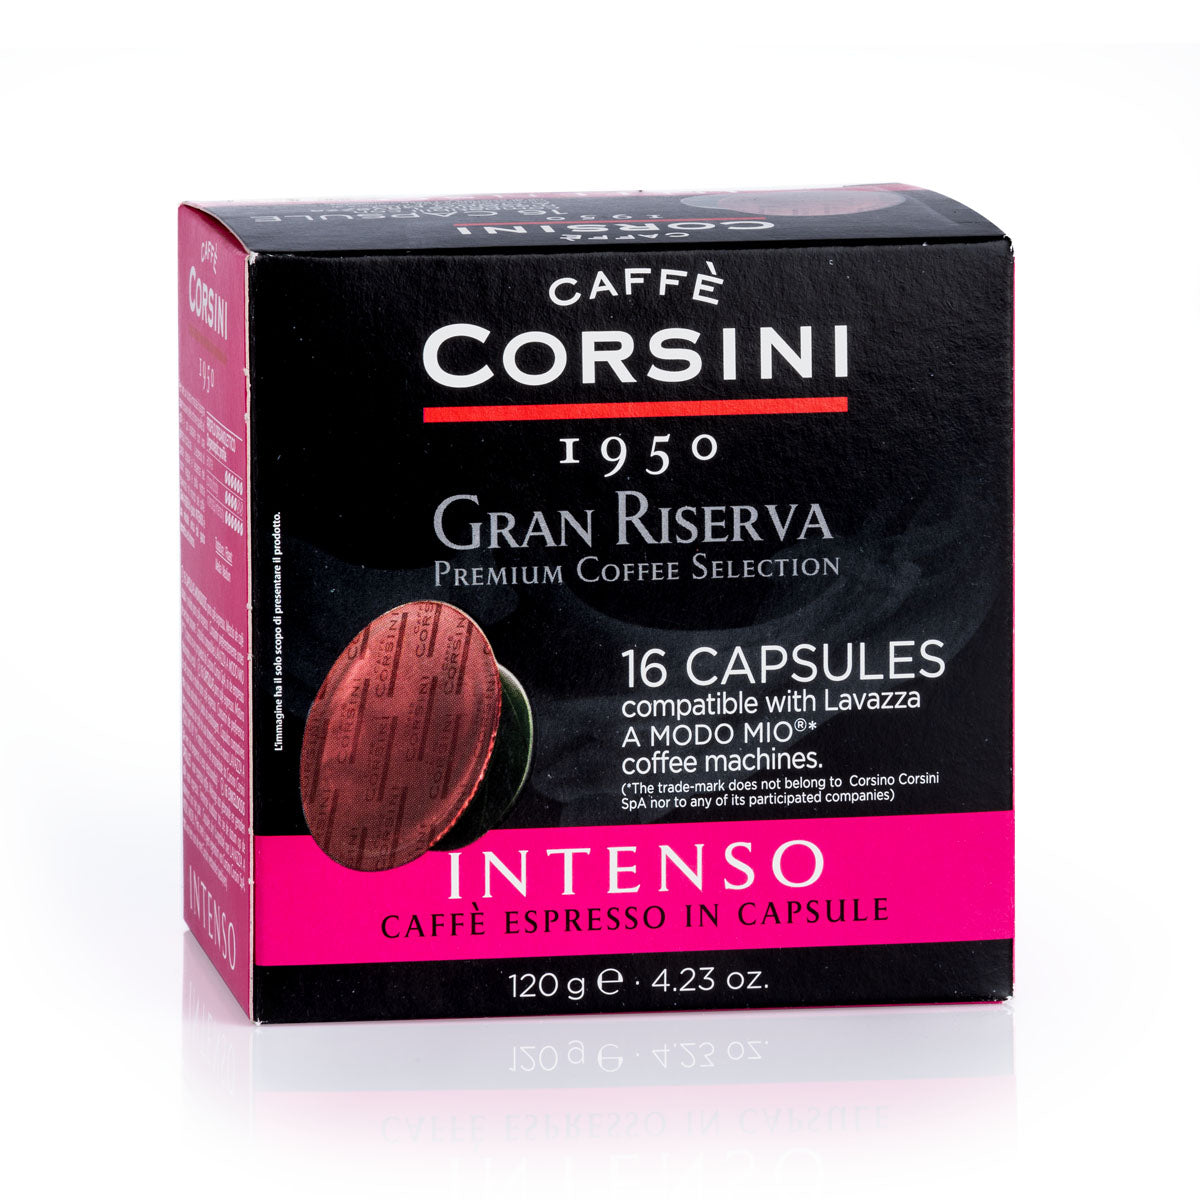 16 Lavazza®* A Modo Mio®* compatible coffee capsules per pack | Gran Riserva Intenso | Box of 12